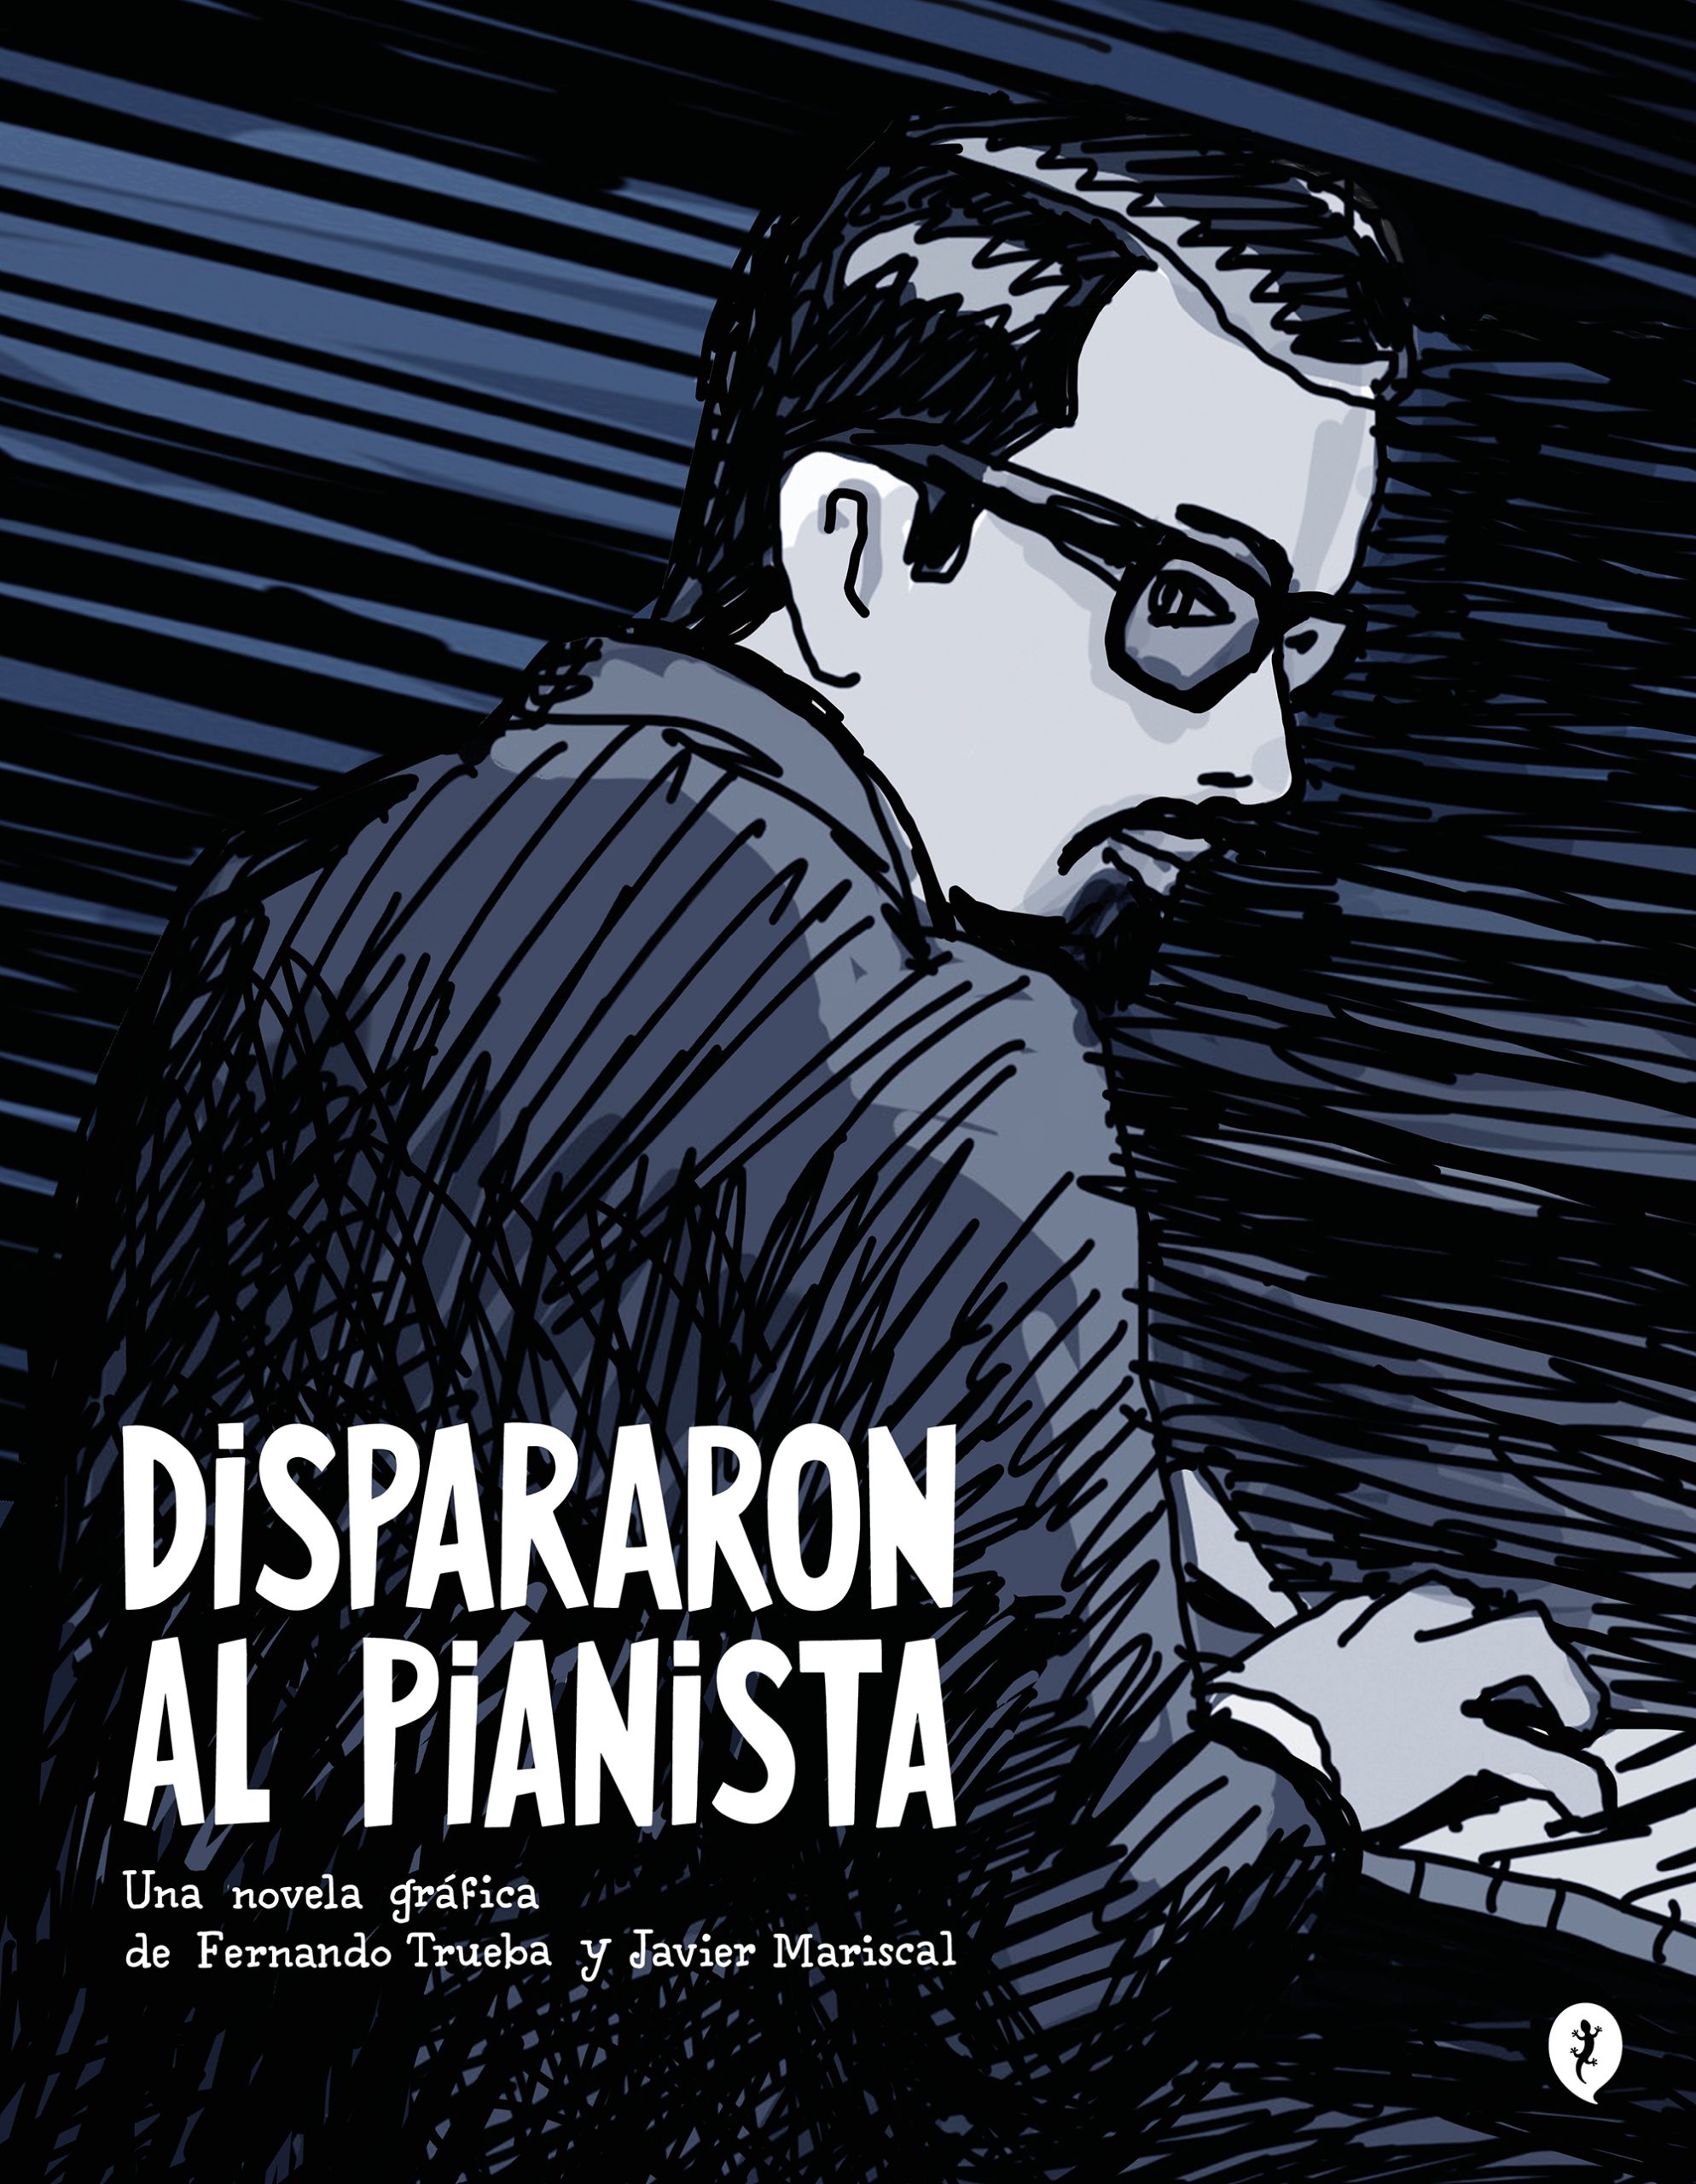 Dispararon al pianista, de Fernando Trueba y Javier Mariscal